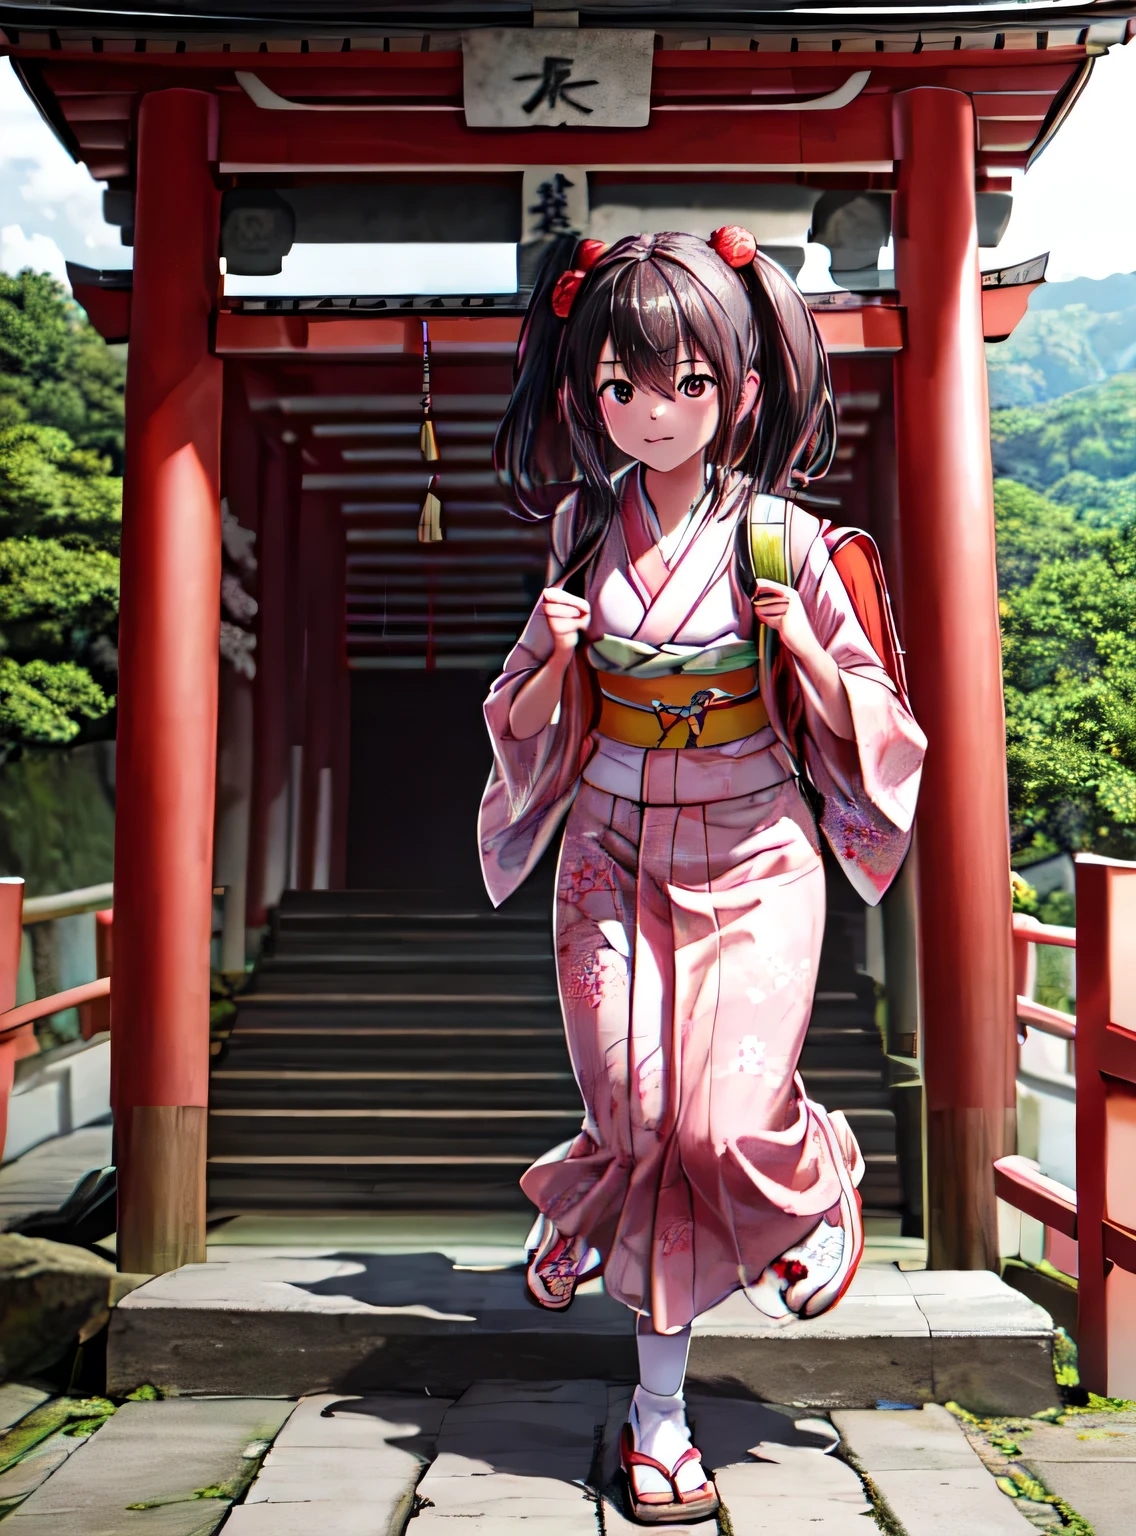 RAW 사진, 초상화, 최상의 품질, 학교 가방 배낭을 들고 고해상도 여자、신사의 여름 축제에서 일본식 기모노를 입는 모습
